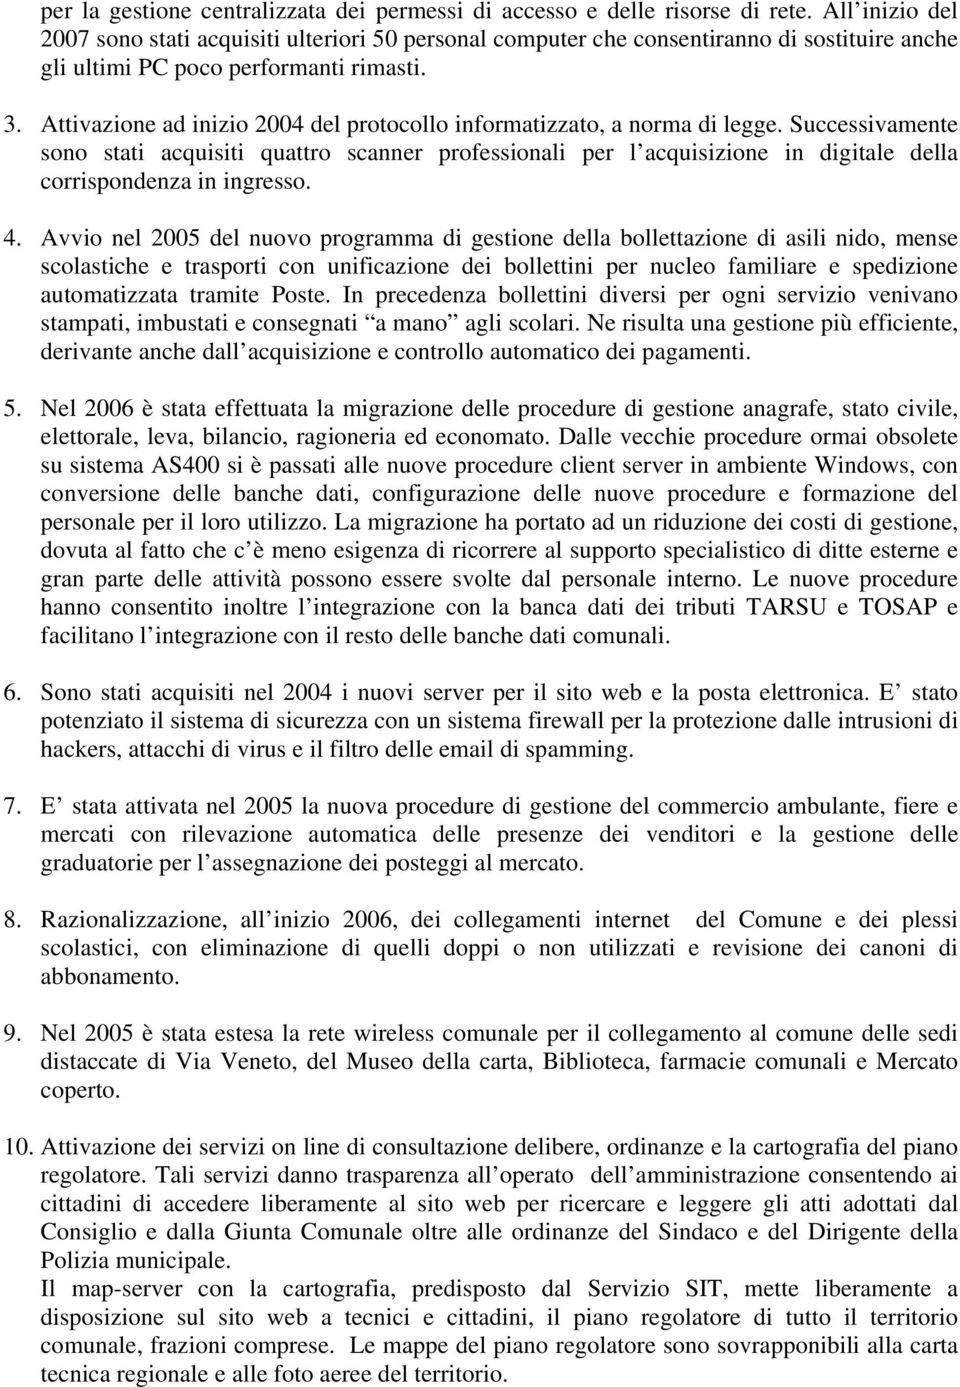 Attivazione ad inizio 2004 del protocollo informatizzato, a norma di legge.